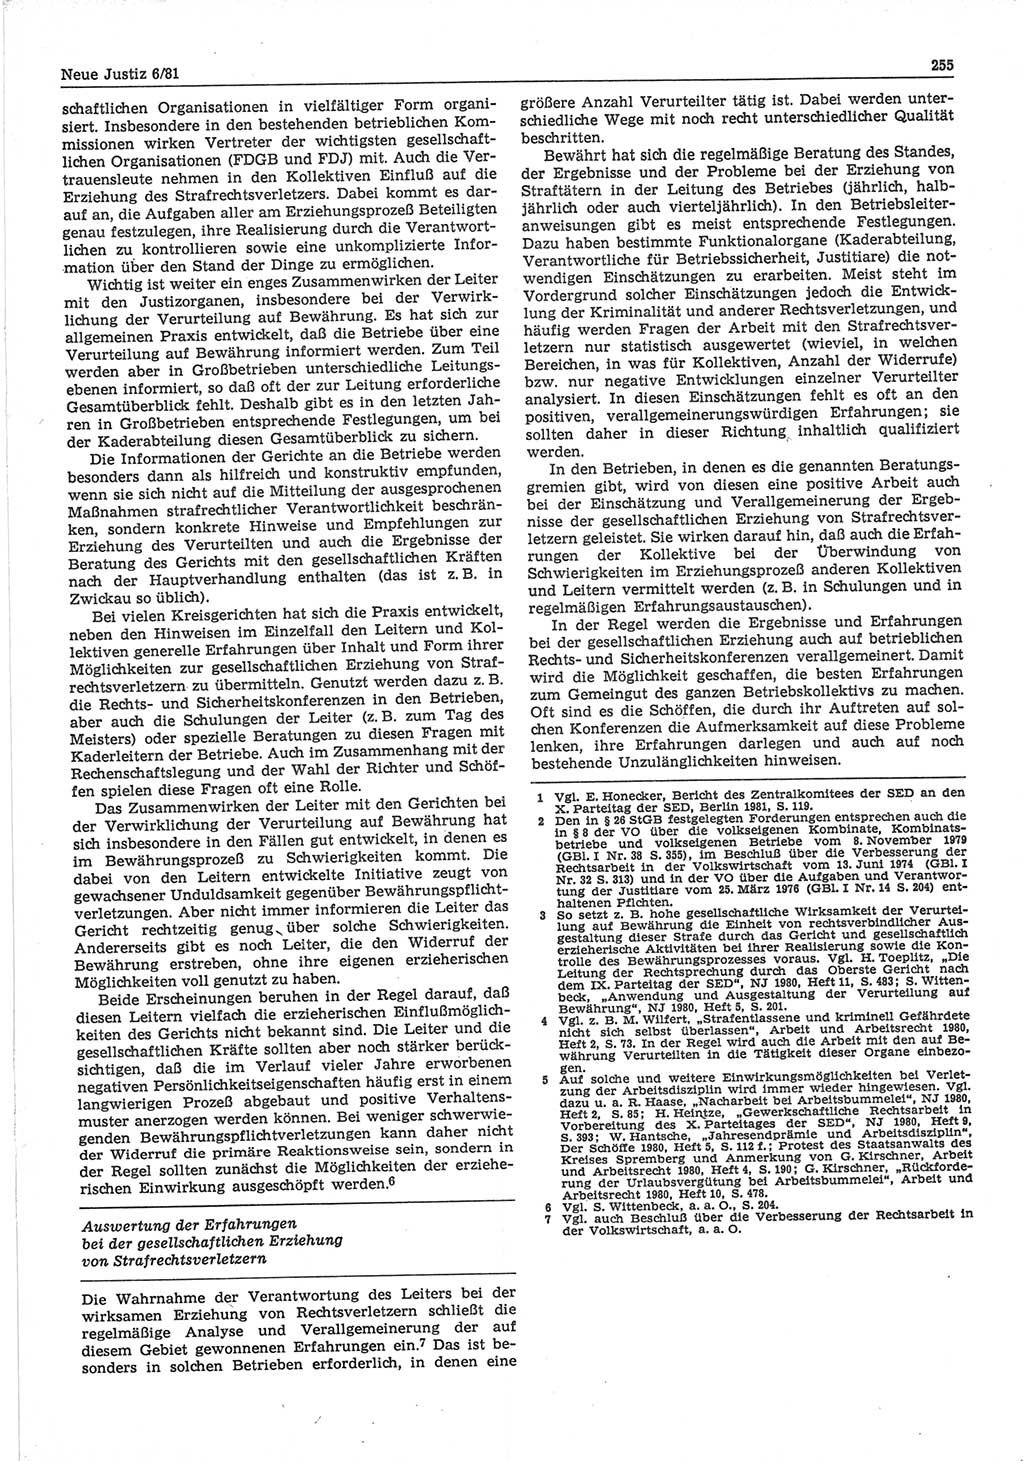 Neue Justiz (NJ), Zeitschrift für sozialistisches Recht und Gesetzlichkeit [Deutsche Demokratische Republik (DDR)], 35. Jahrgang 1981, Seite 255 (NJ DDR 1981, S. 255)